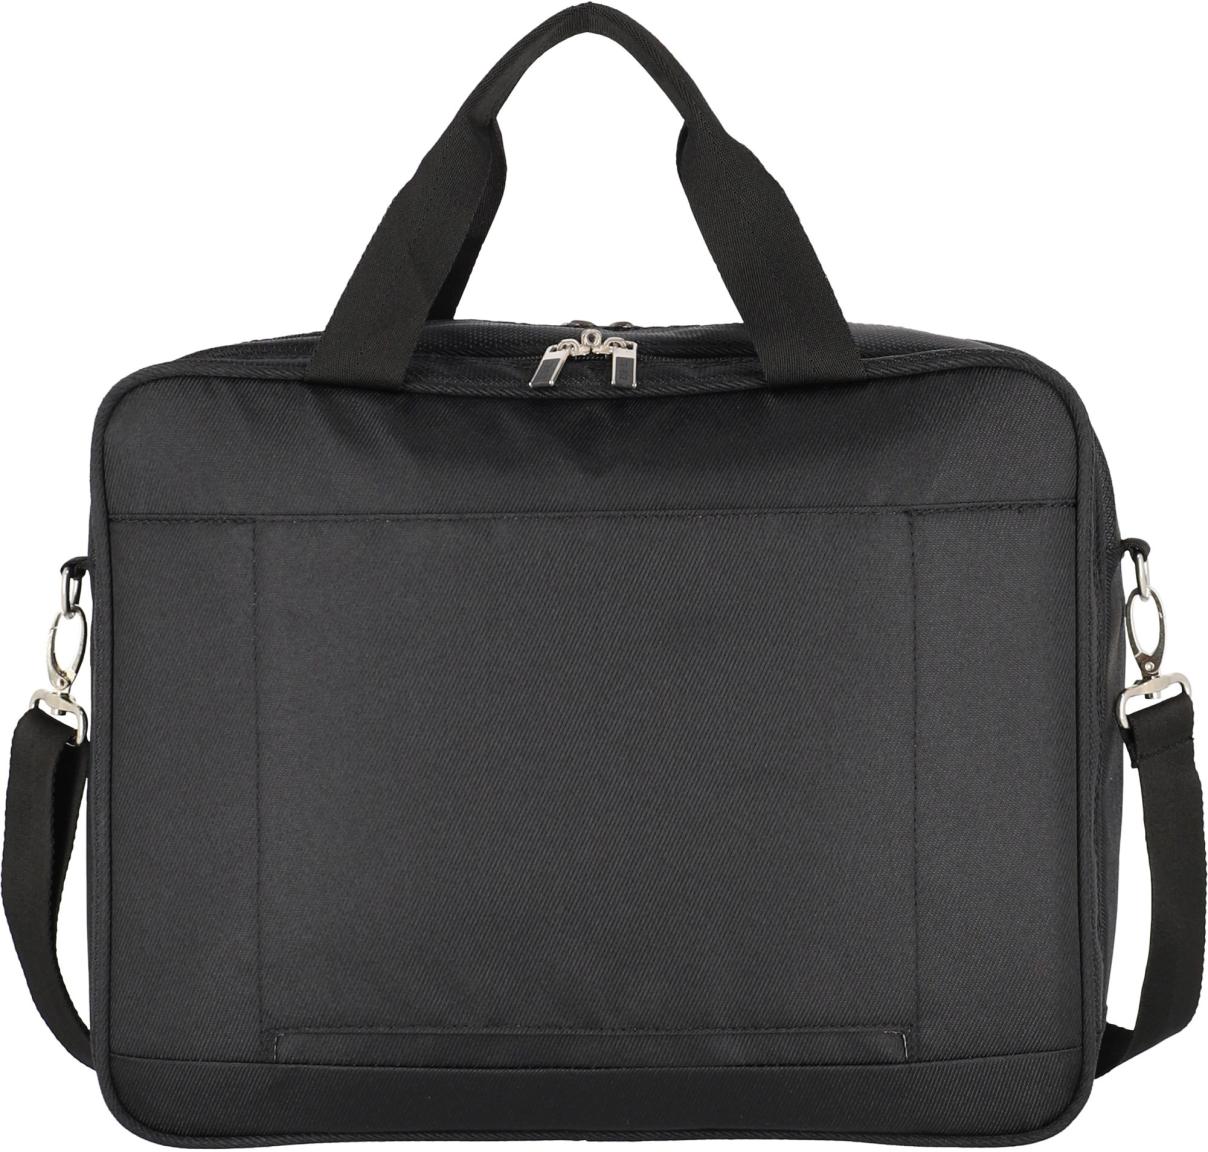 Travelite Miigo Black Laptoptasche schwarz Handgepäck